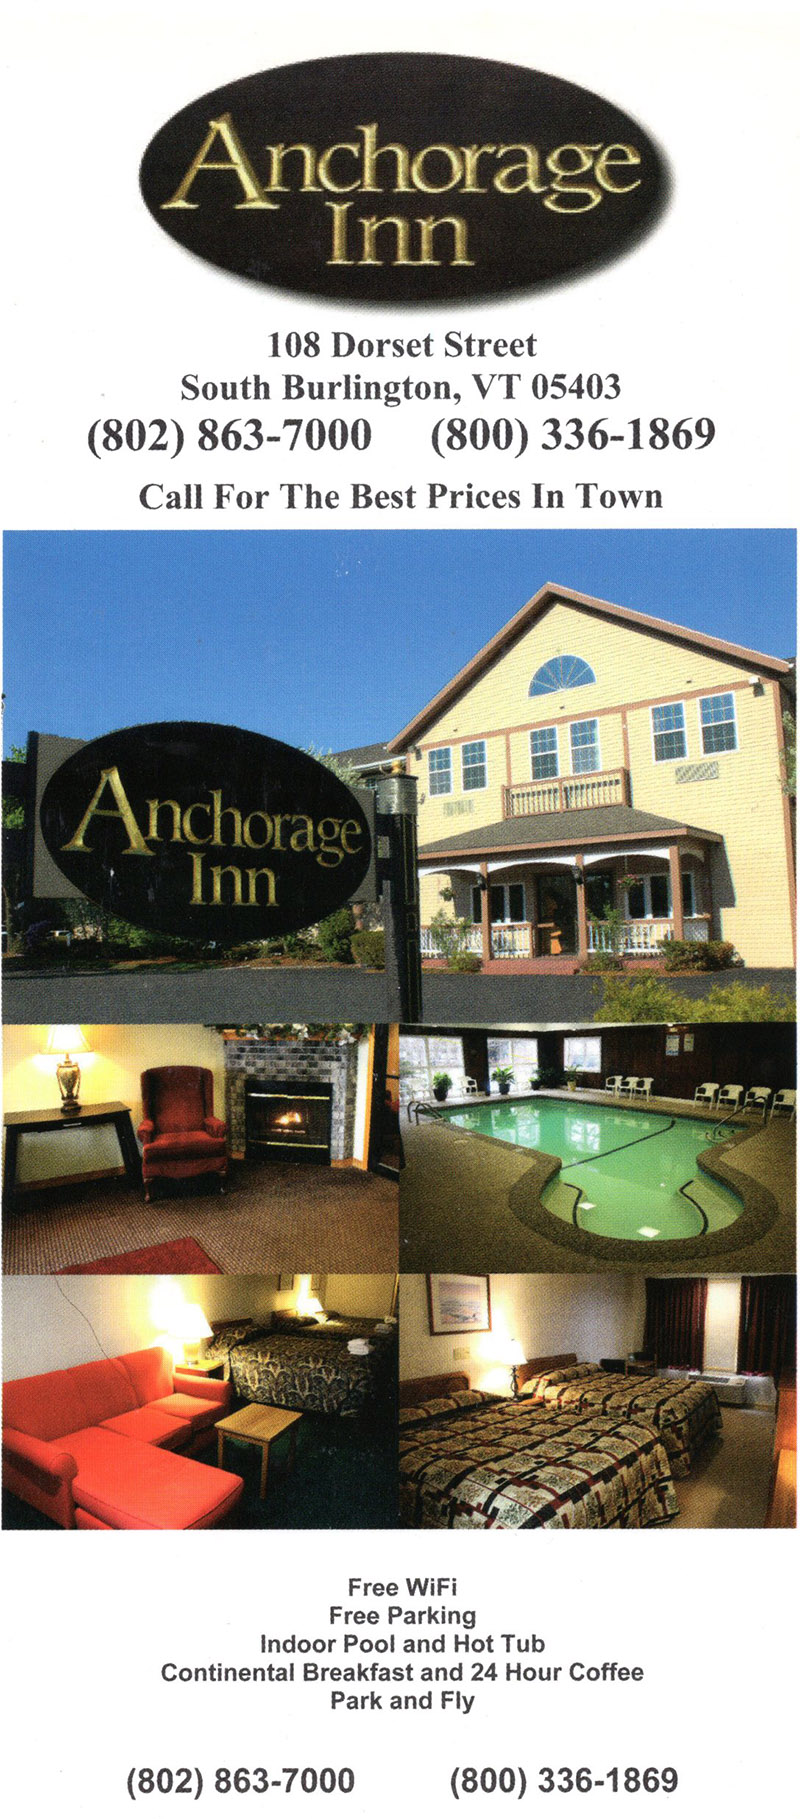 Anchorage Inn brochure thumbnail